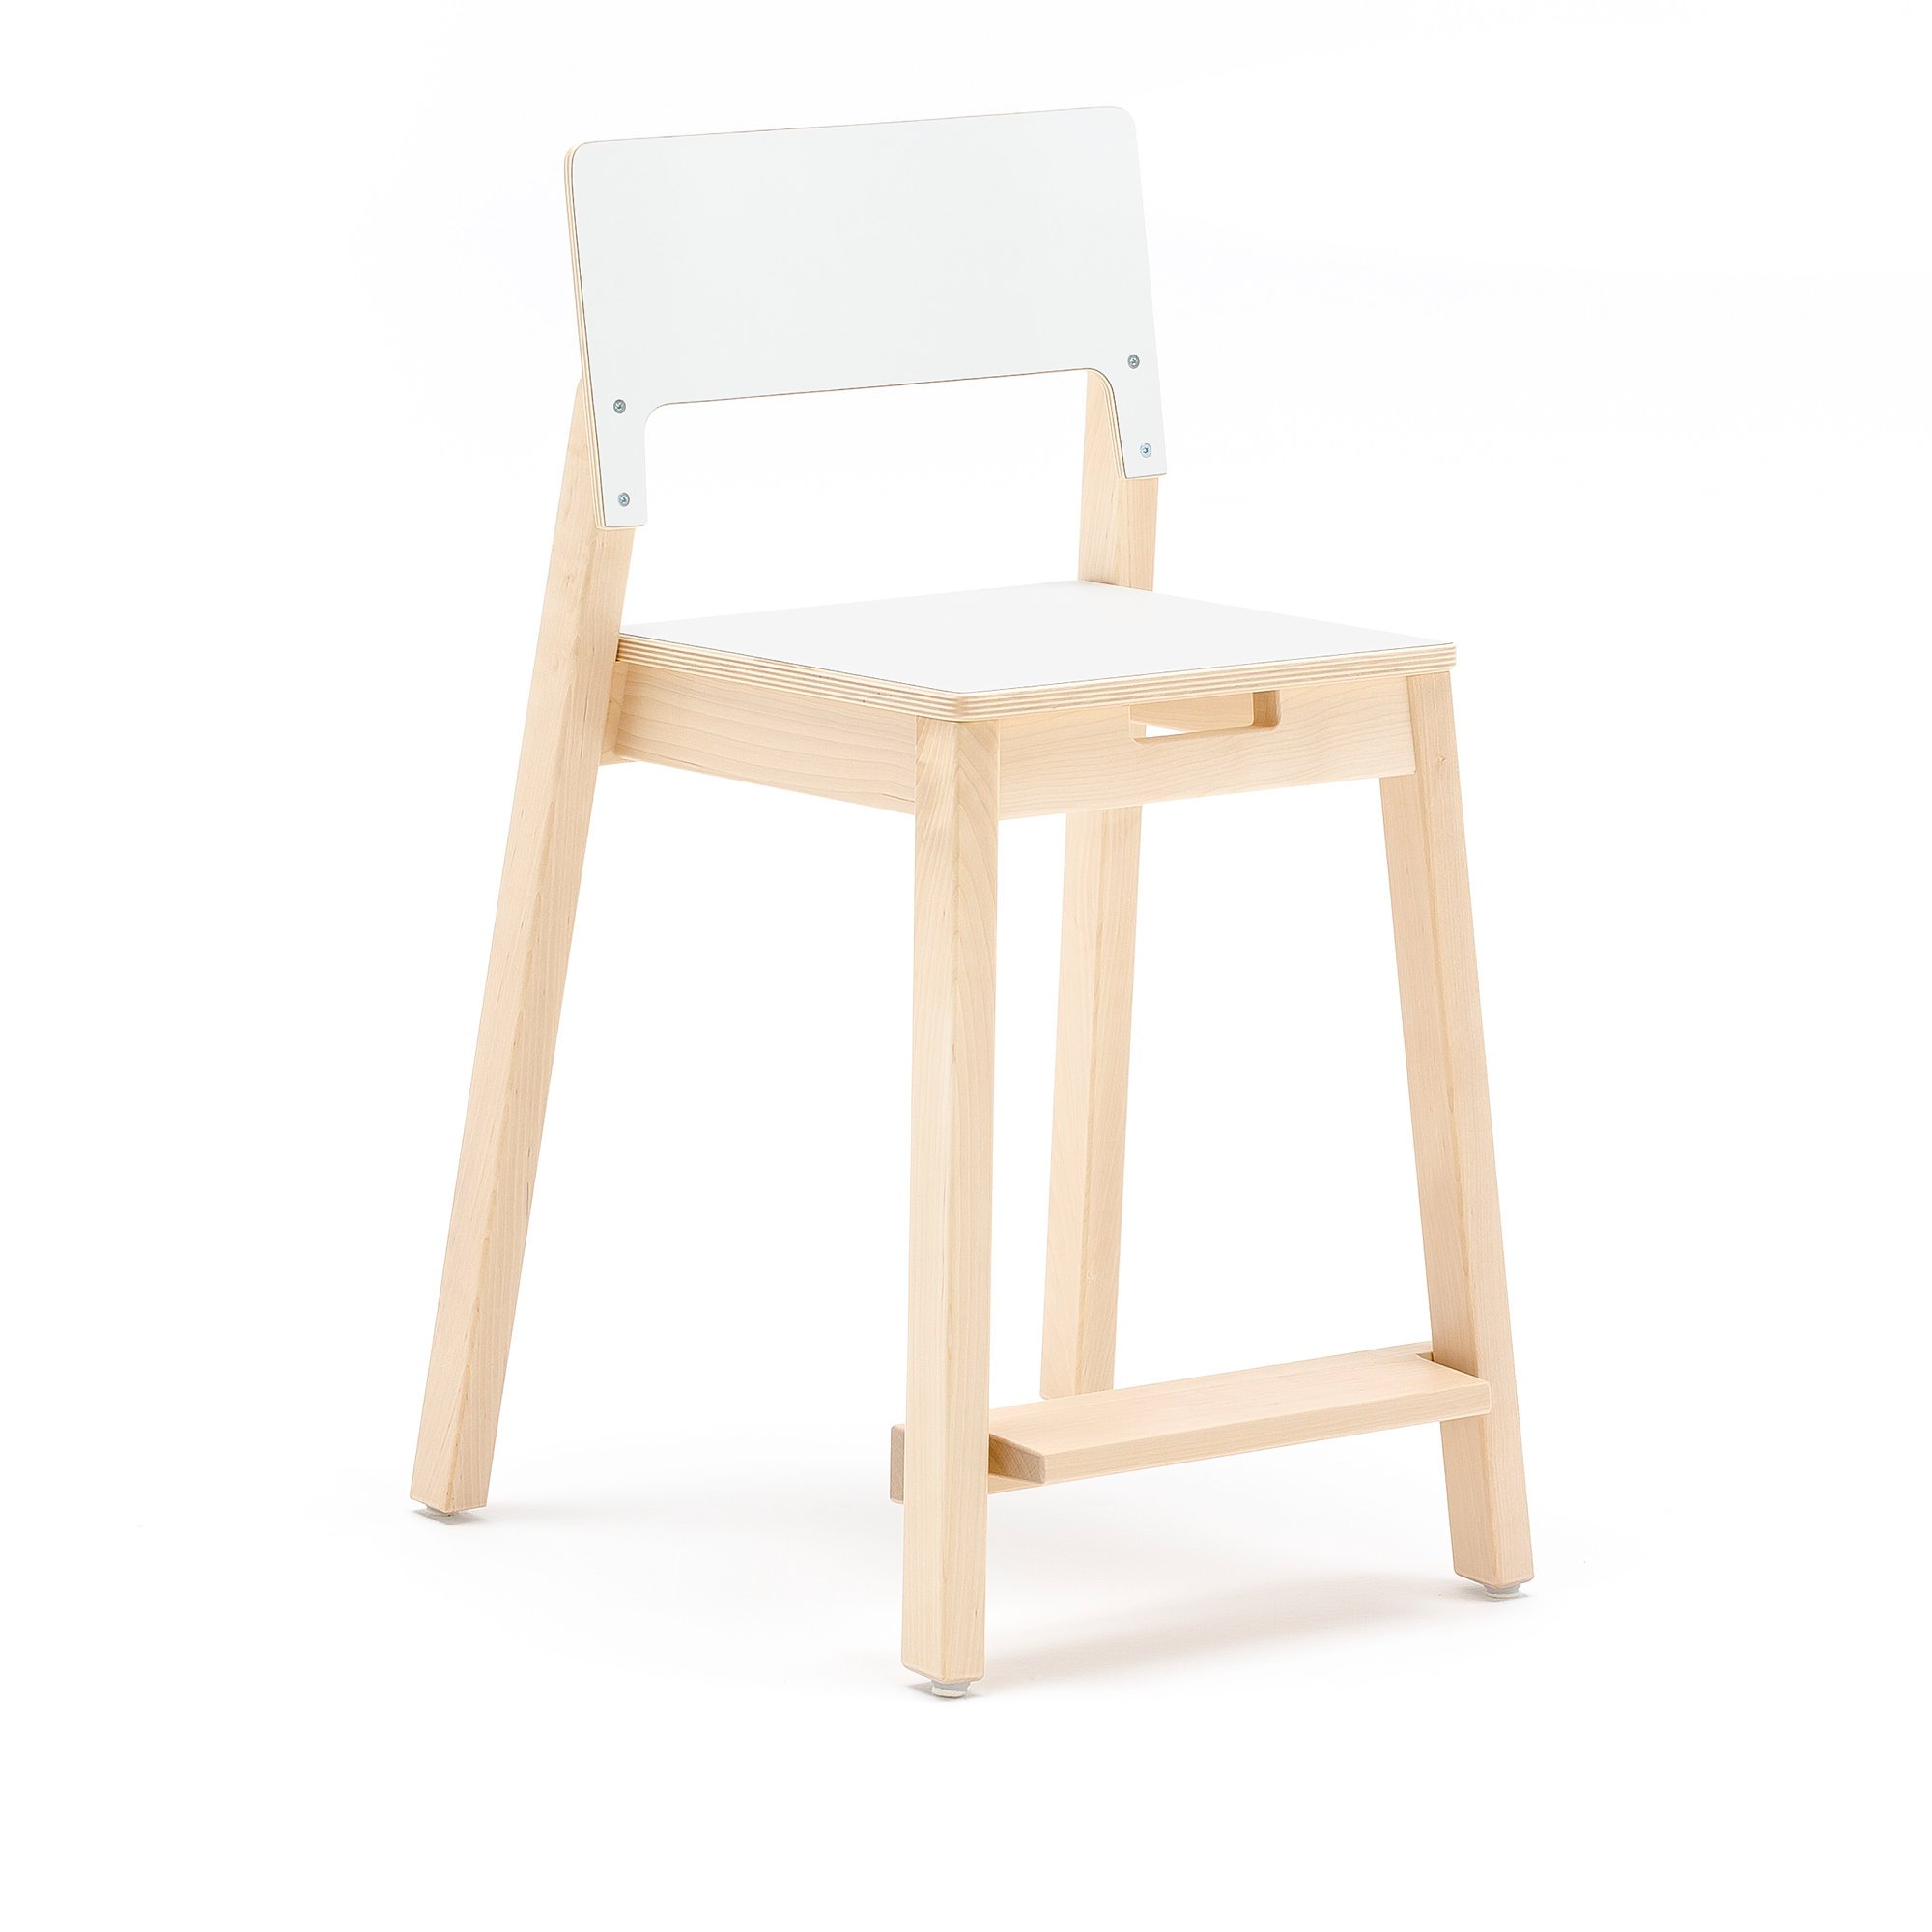 Tall children's chair LOVE, H 500 mm, birch, white laminate